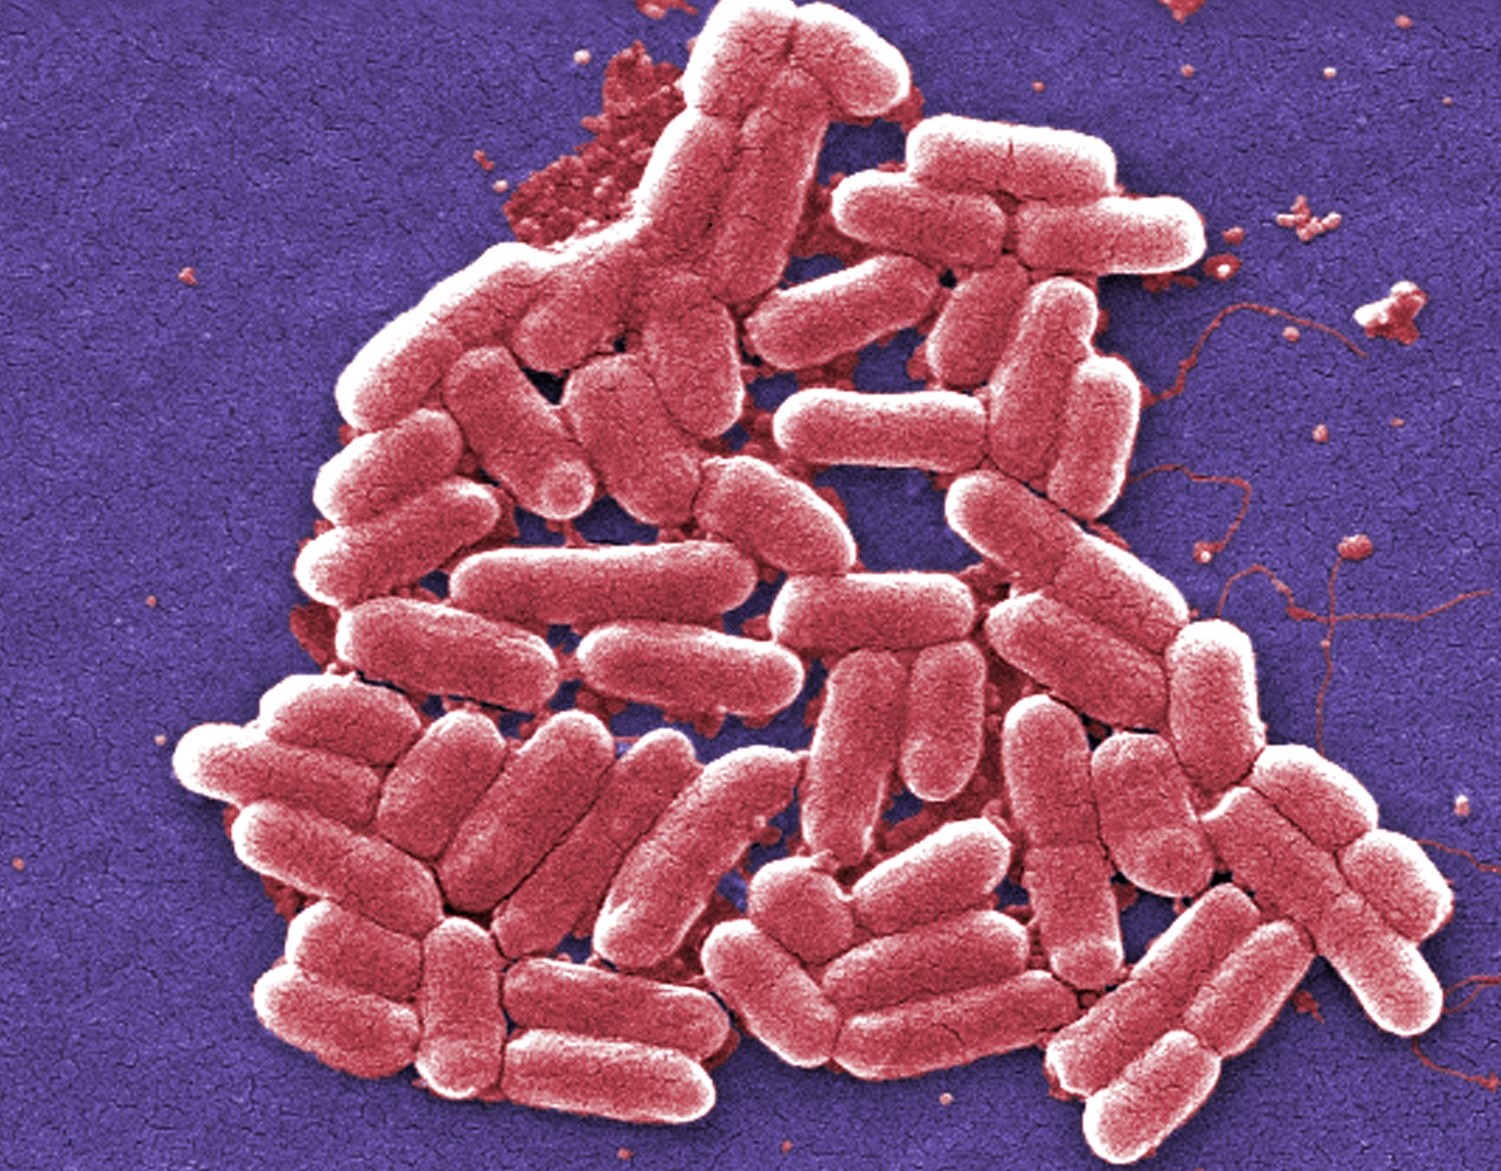 Especialistas temen que sea el anuncio de una generación de superbacterias.